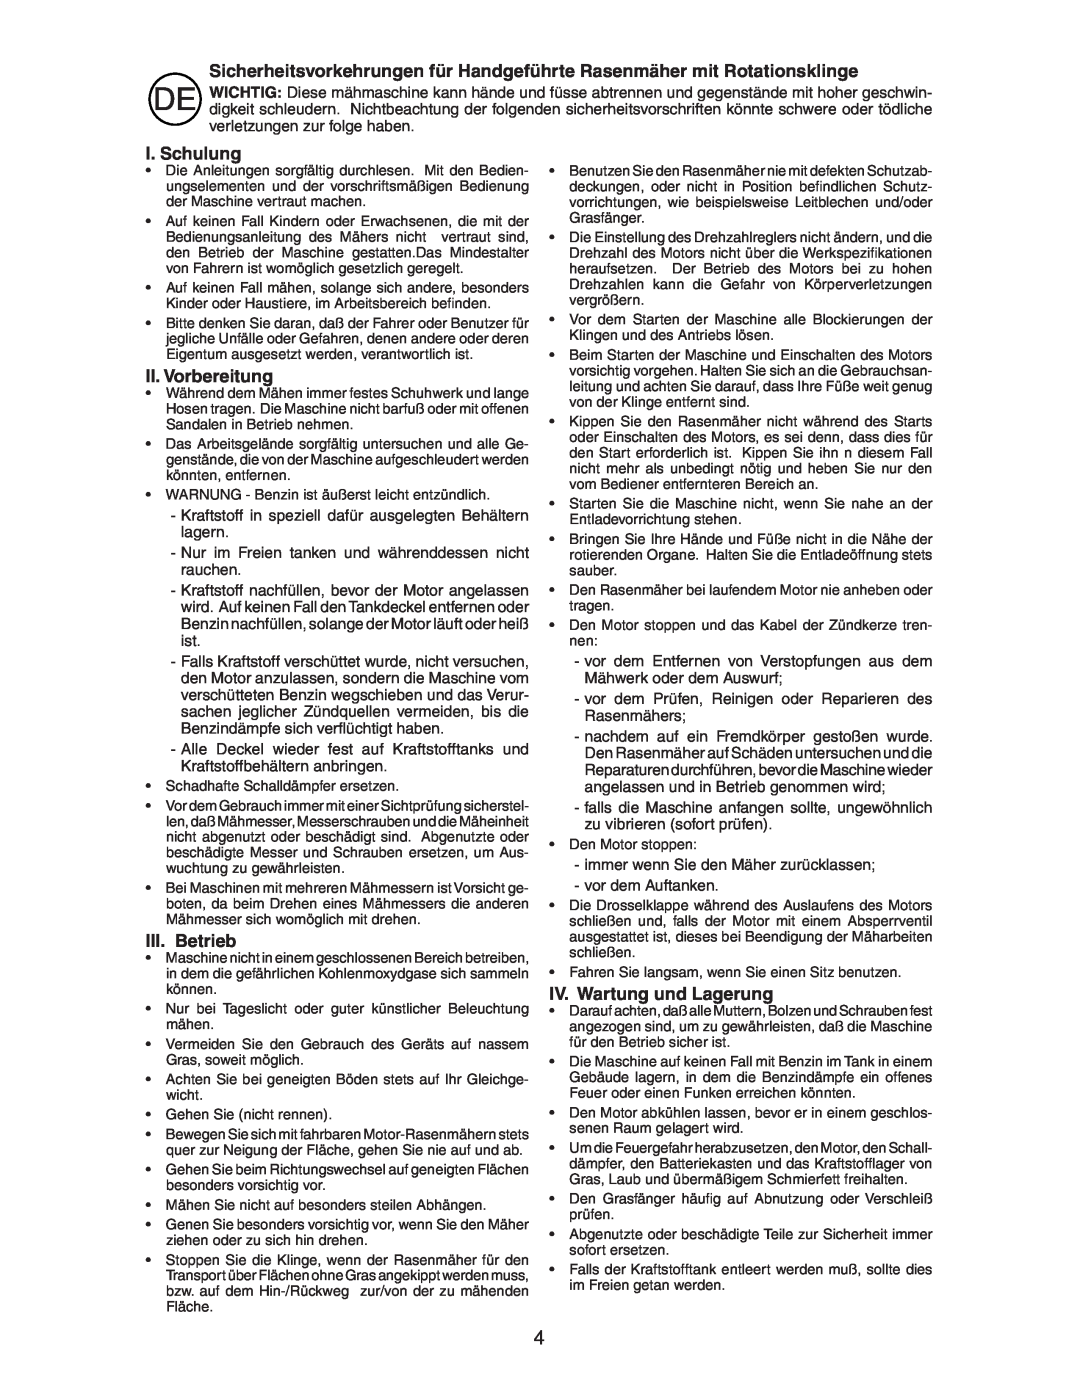 Jonsered LM2153CMDA instruction manual I. Schulung, II. Vorbereitung, III. Betrieb, IV. Wartung und Lagerung 